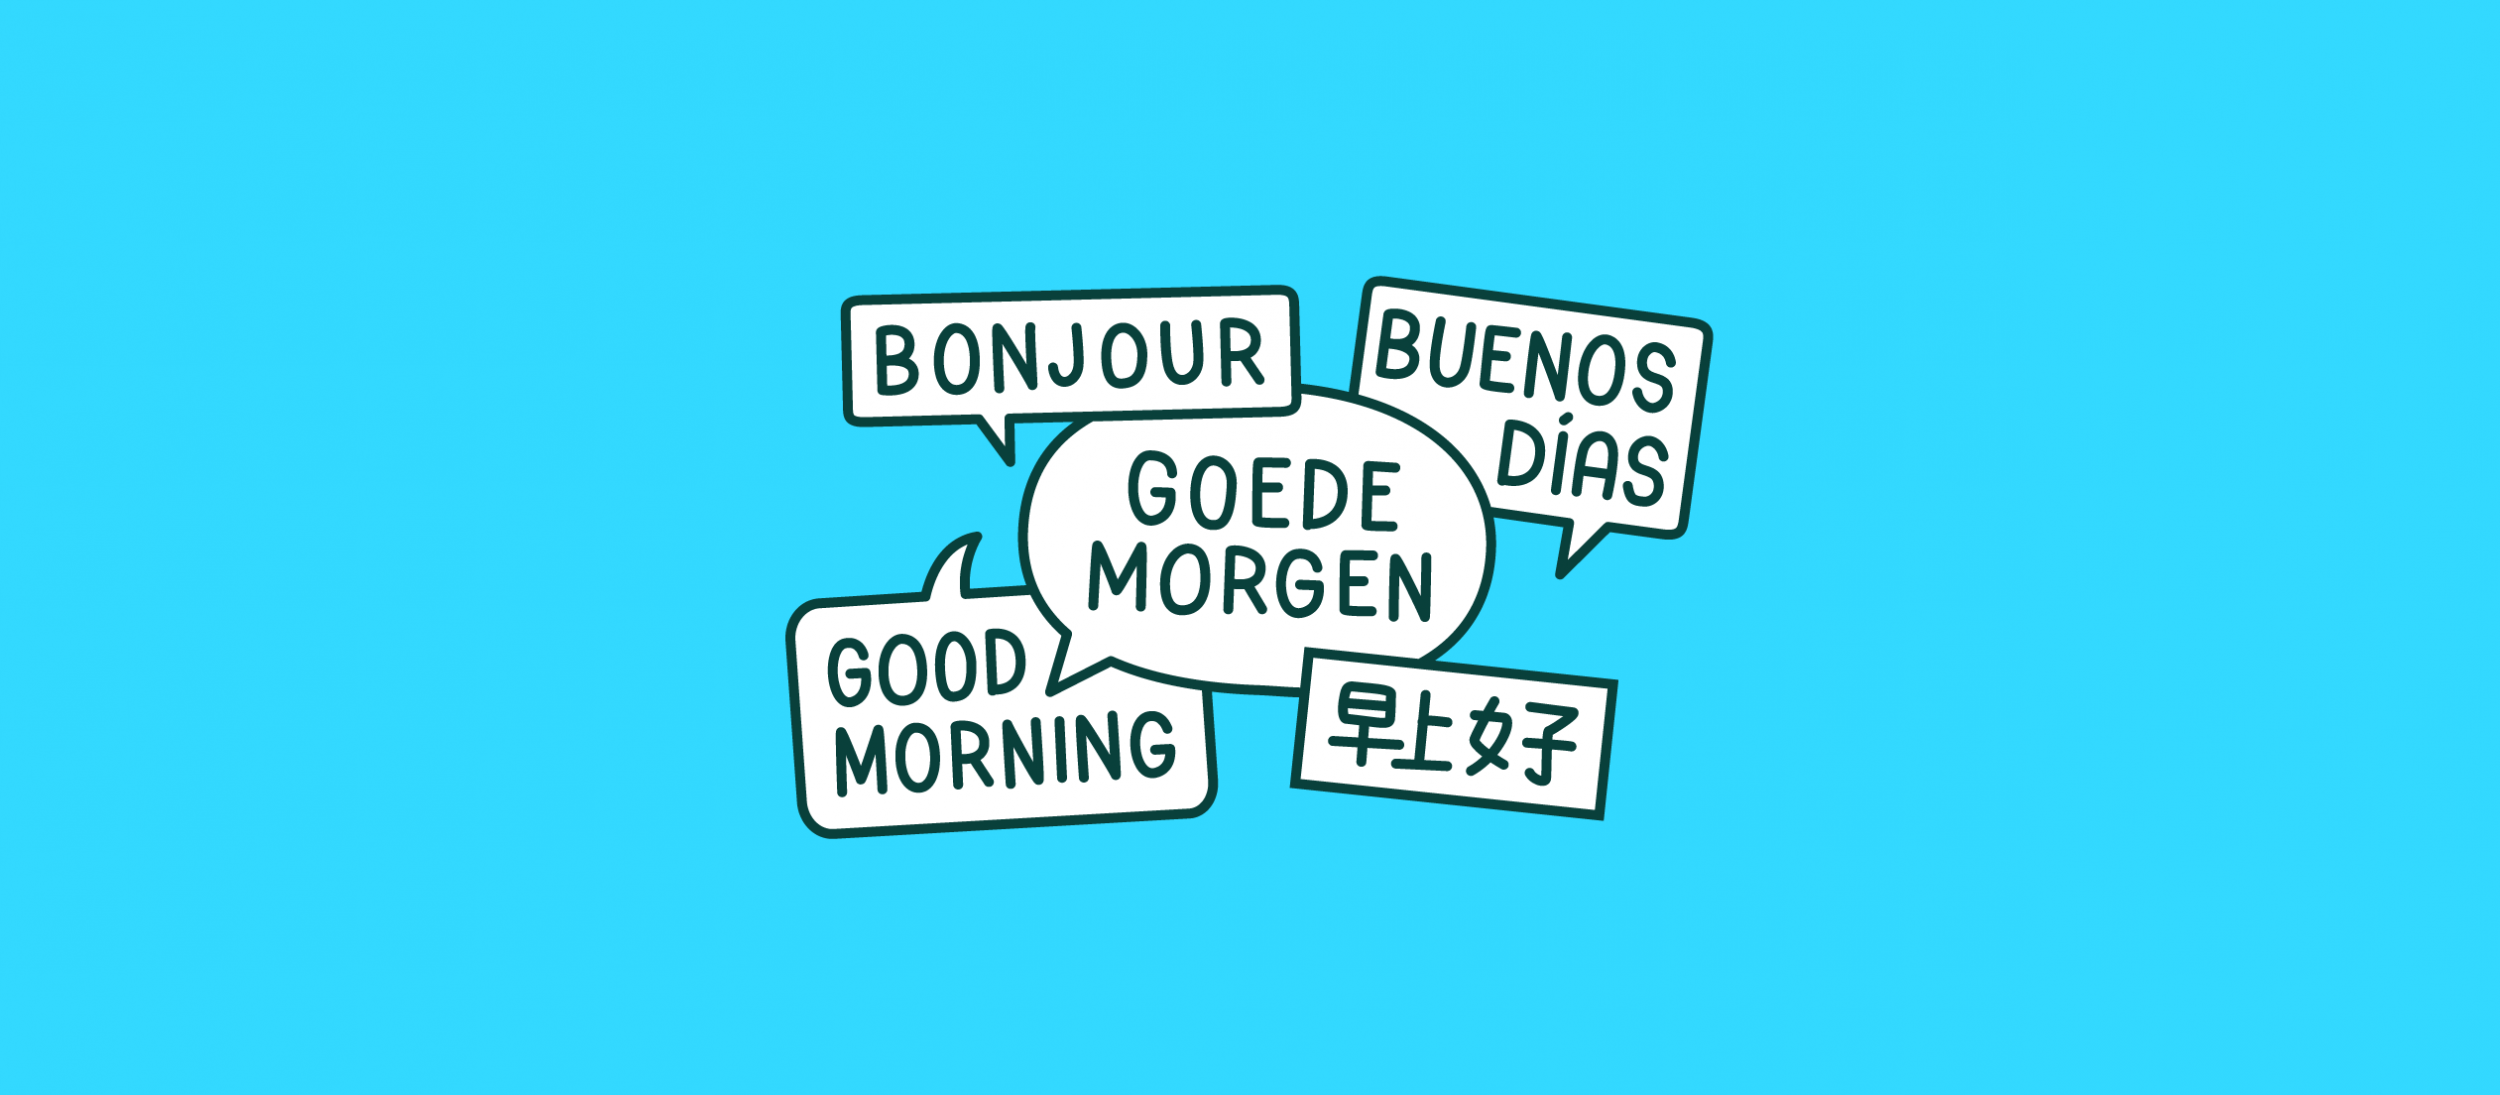 Tekstballonnetjes met "goedemorgen" in verschillende talen.